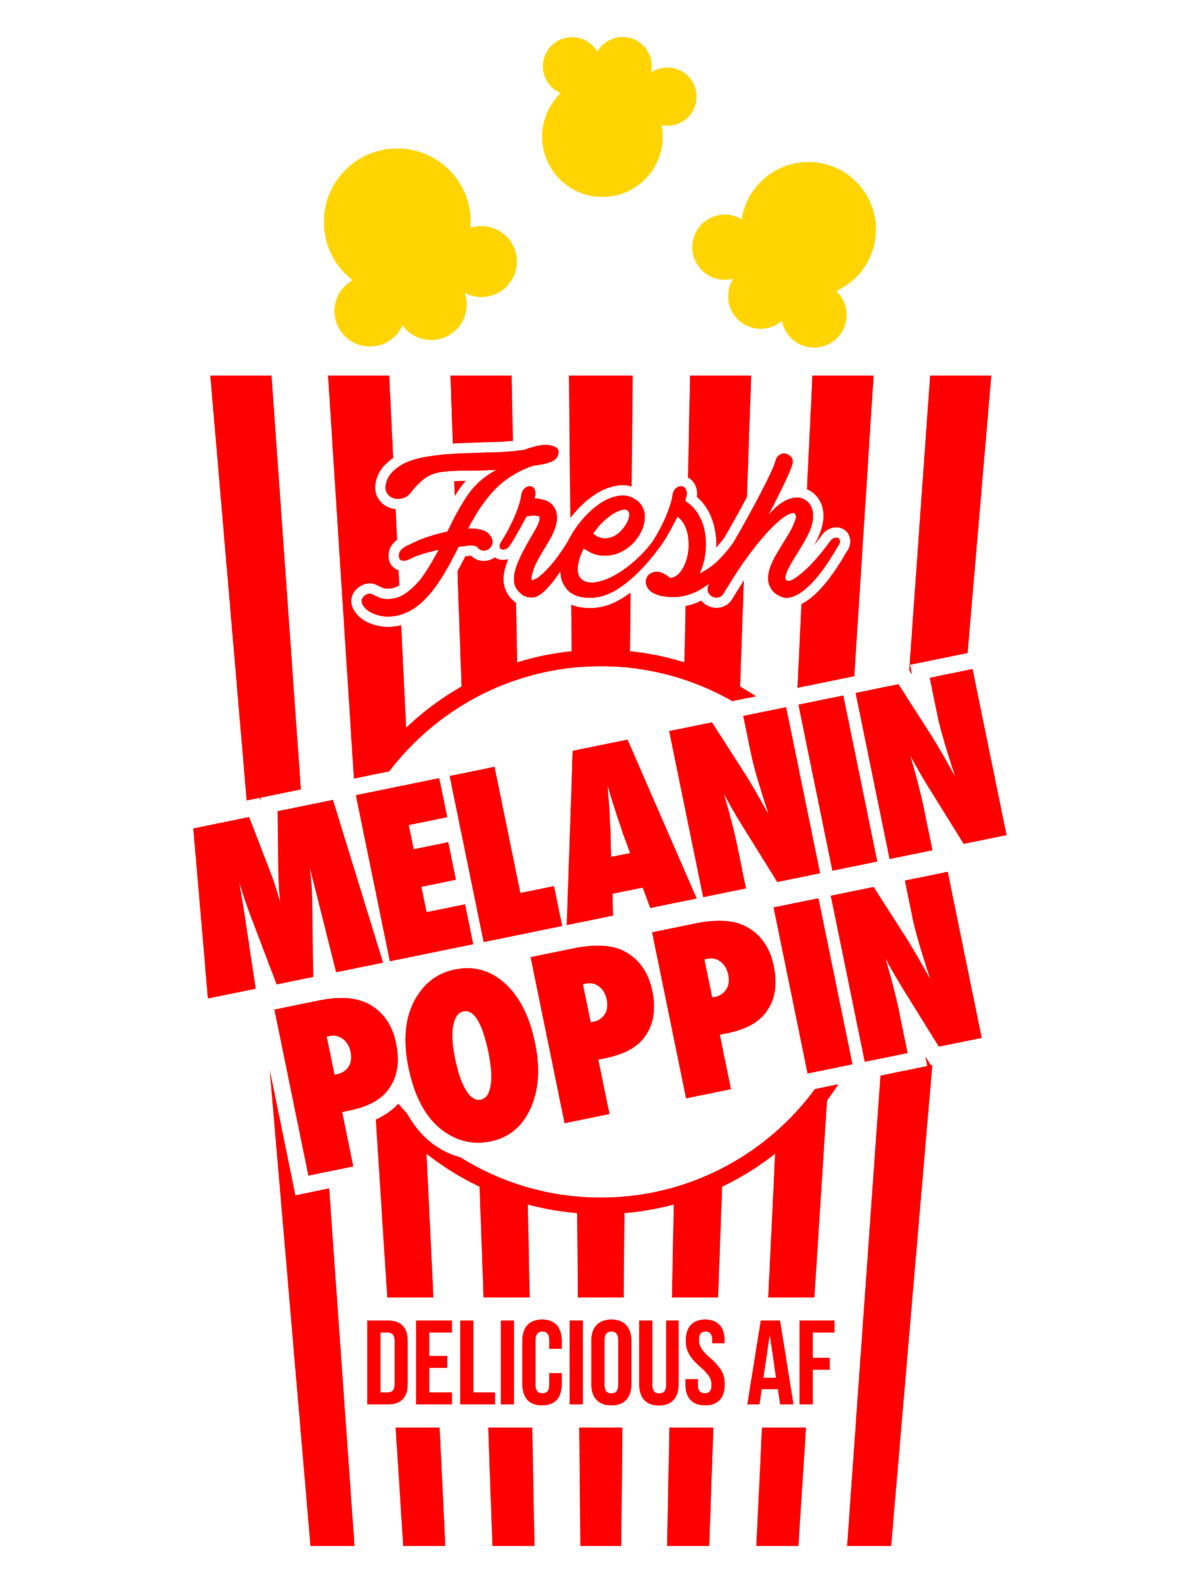 Melanin poppin popcorn Svg